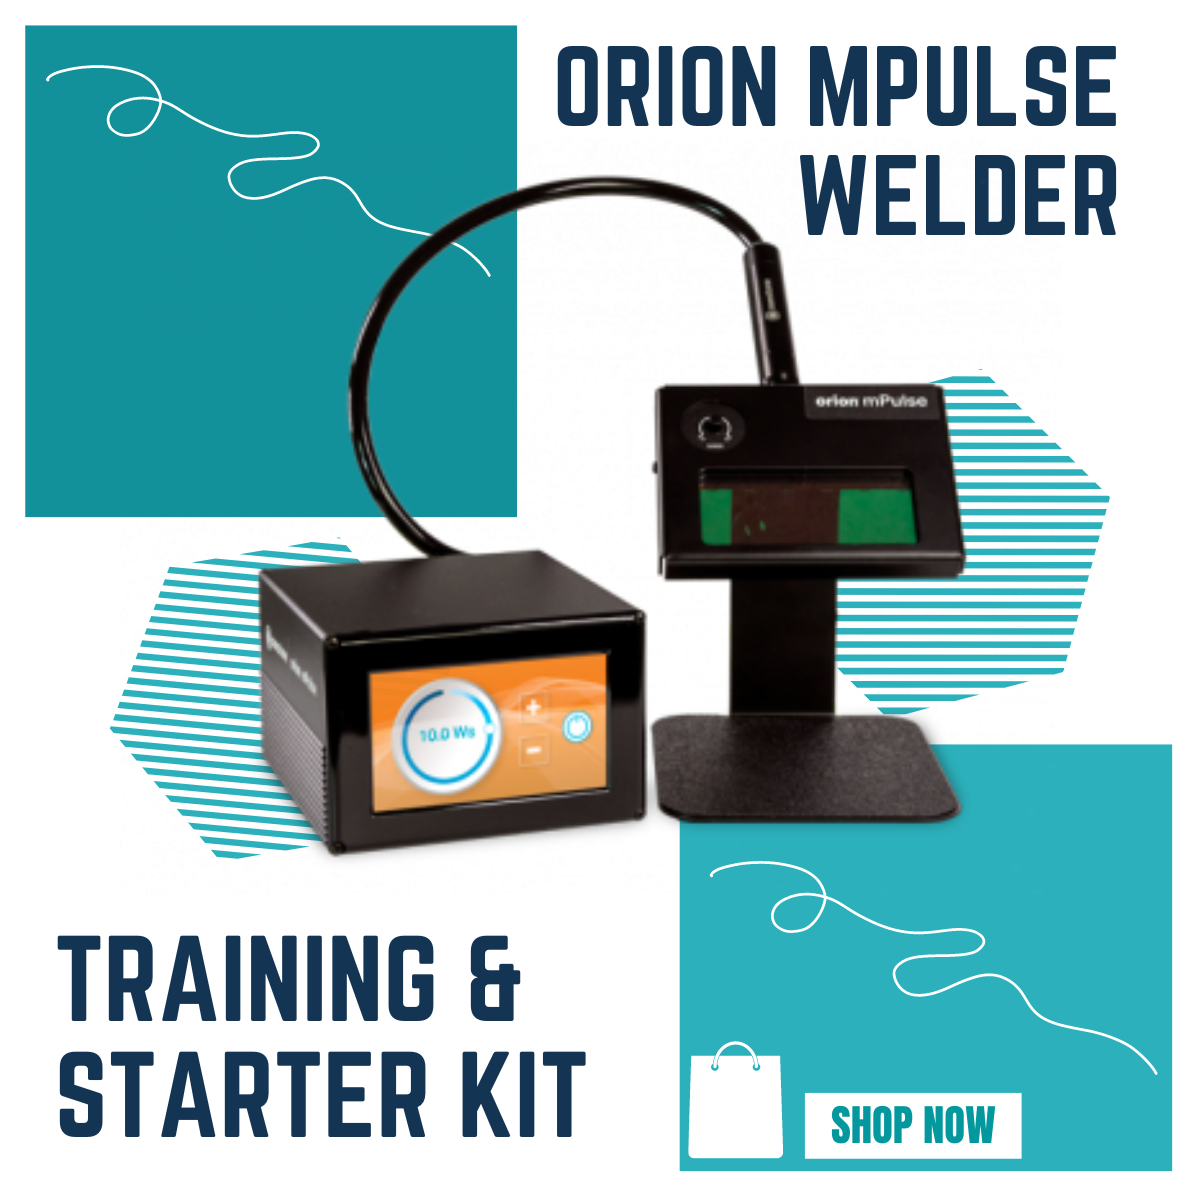 Orion mPulse welder